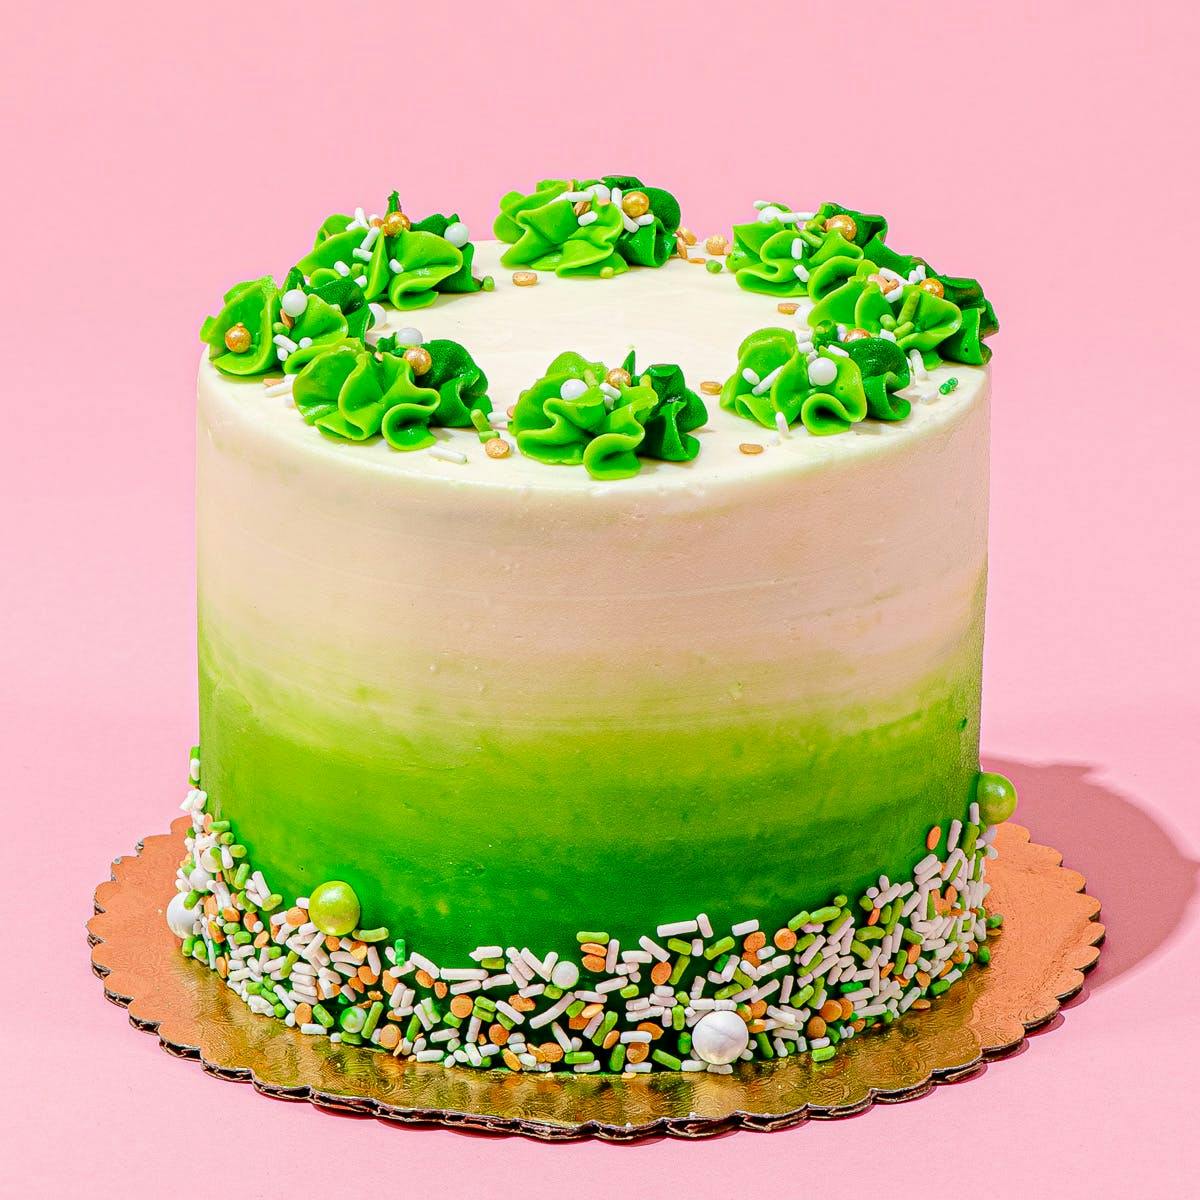 Green Birthday Cake Images - Free Download on Freepik